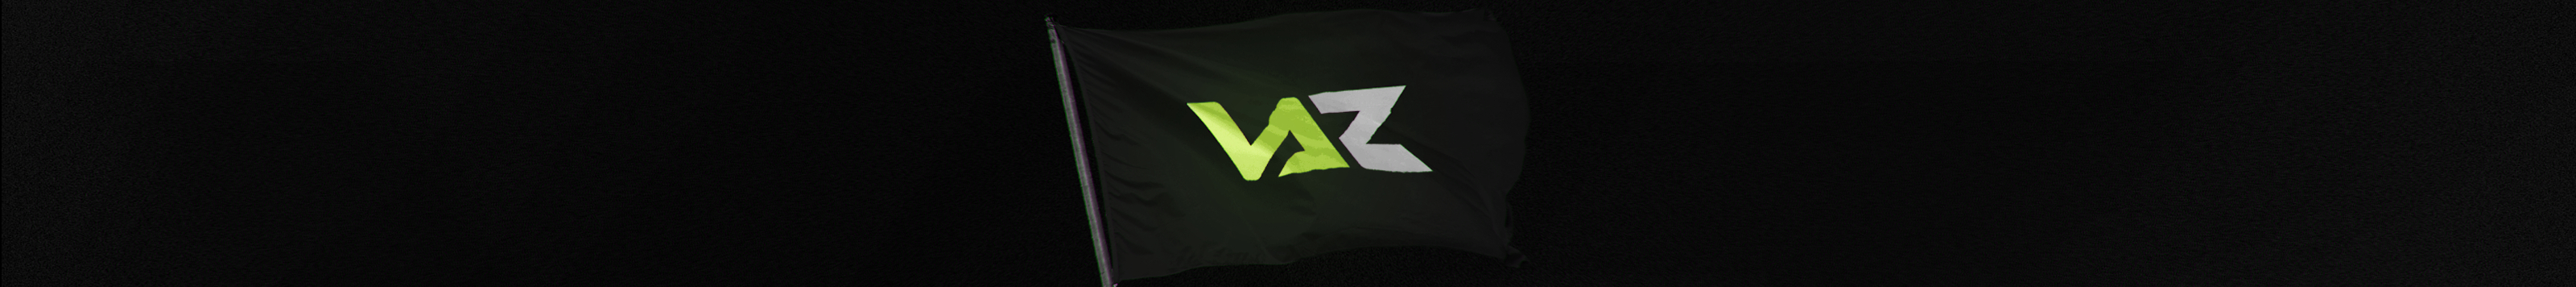 Banner profilu uživatele Vaztfy ‎